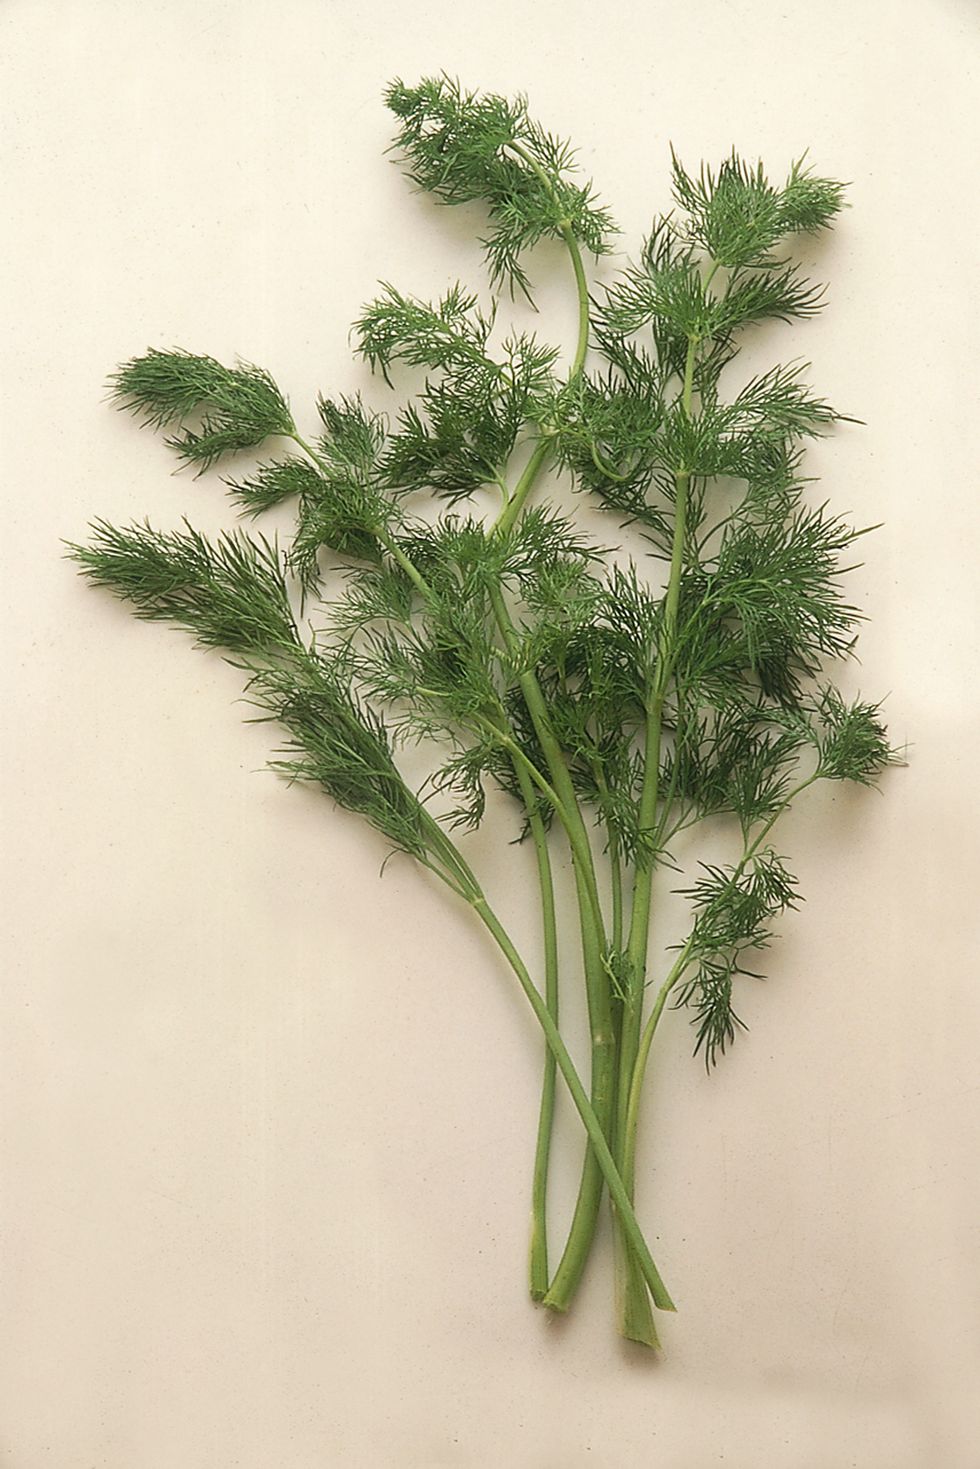 Wild fennel